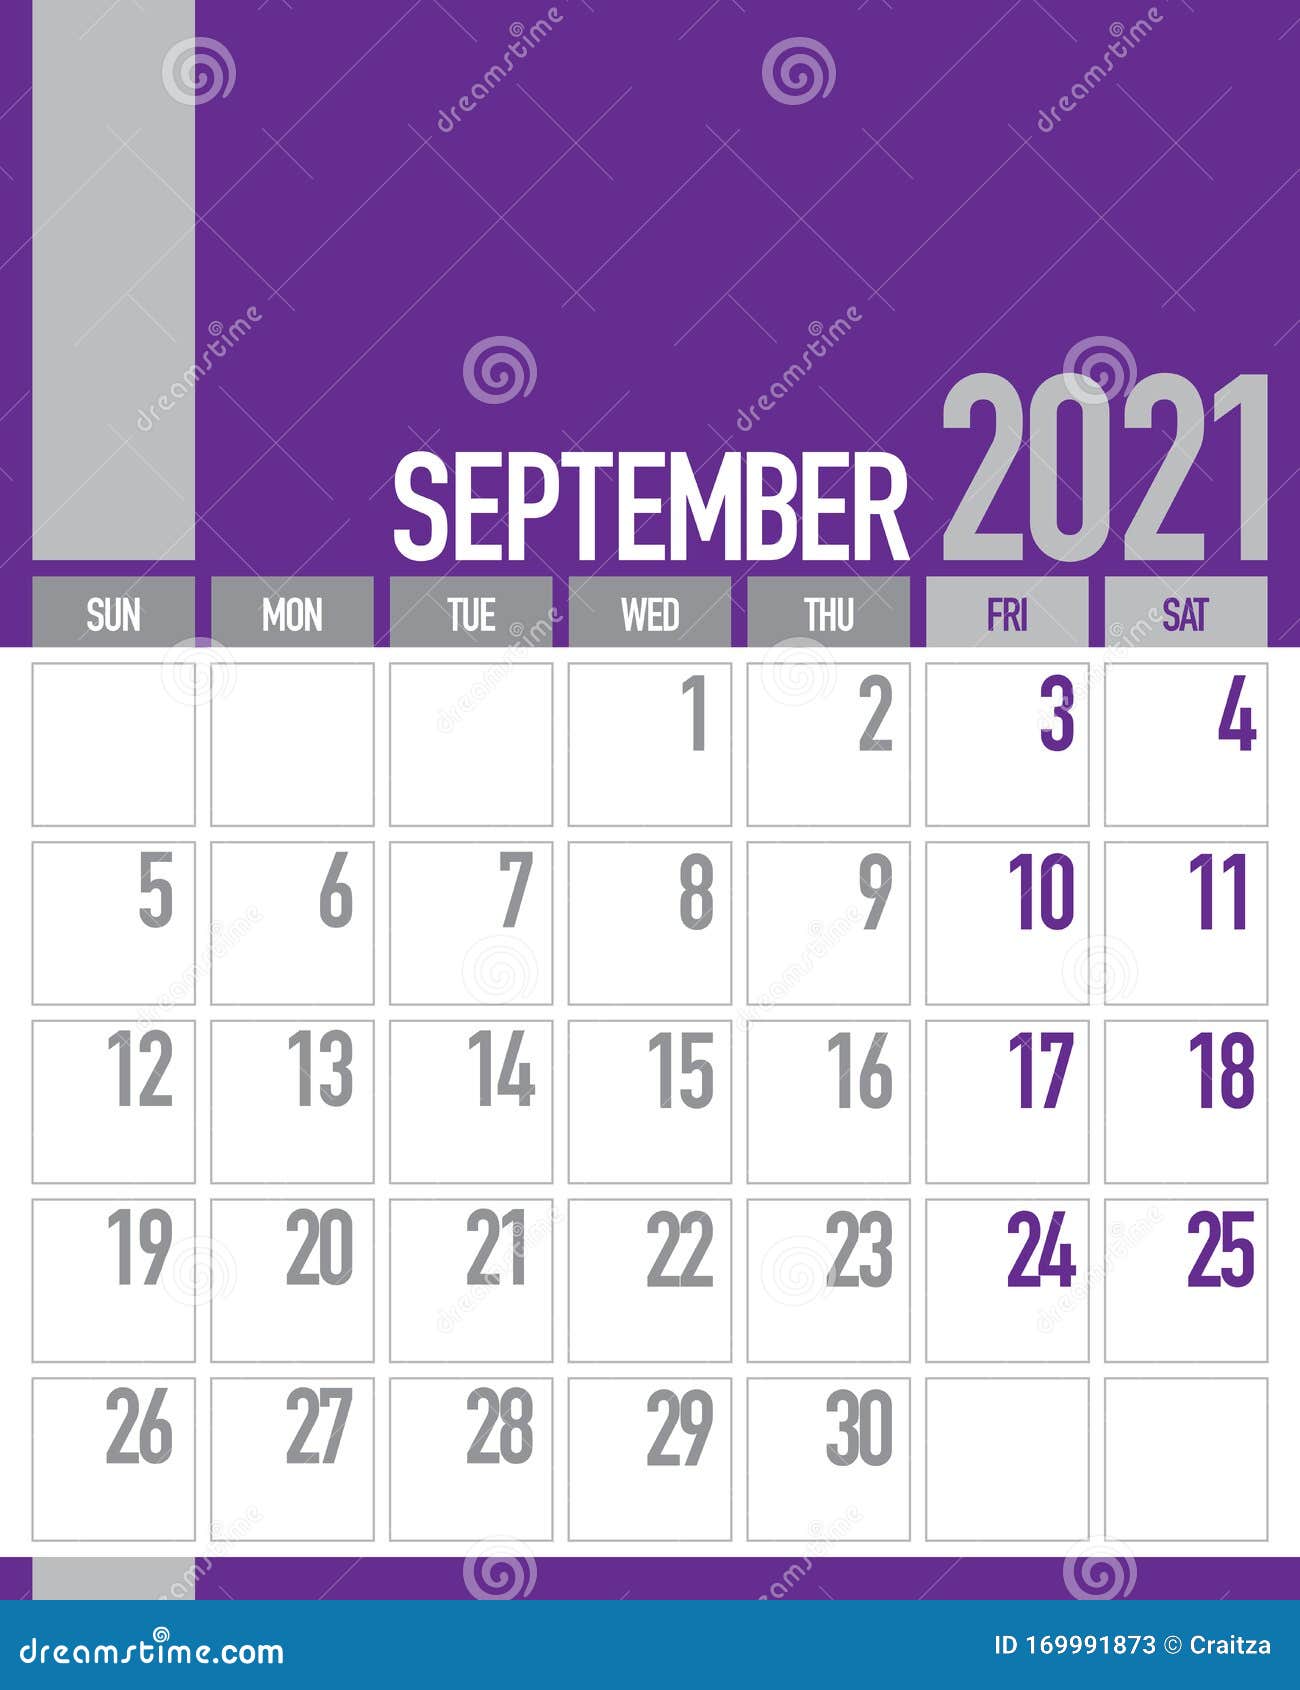 september business calendar 2021 free September 2021 Business Planner Calendar Stock Illustration Illustration Of Craitza 2021 169991873 september business calendar 2021 free